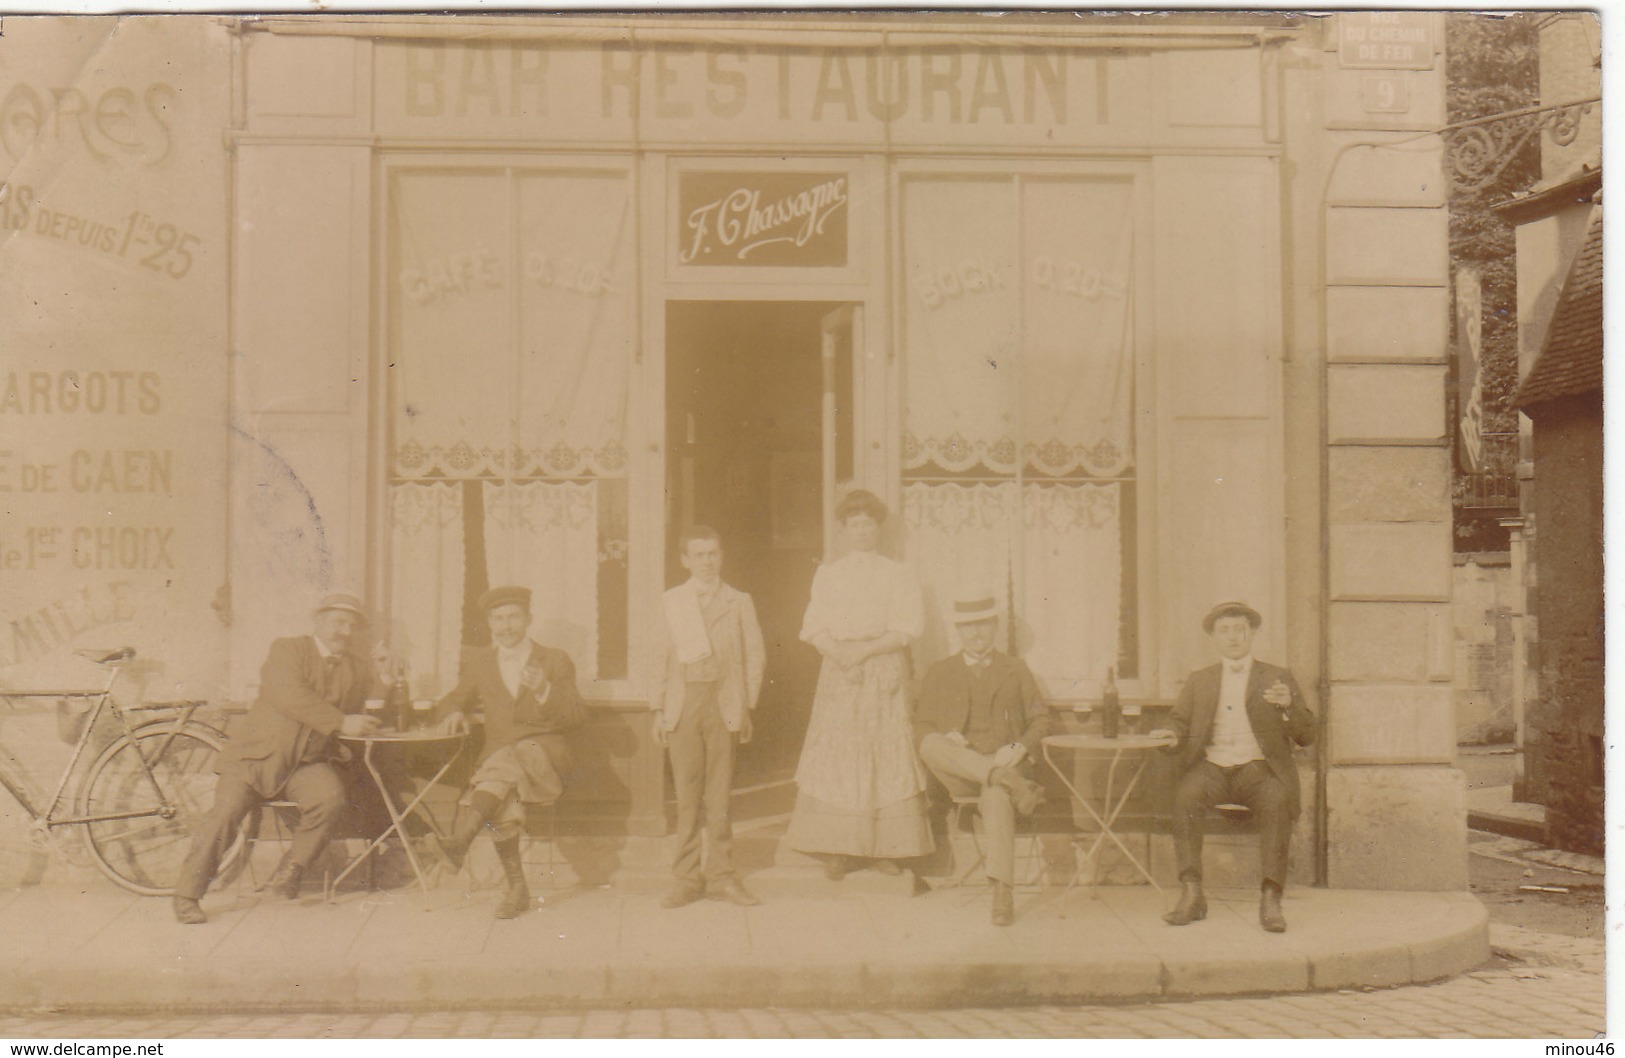 PARIS 19E : T.RARE CARTE -PHOTO DE 1909.BAR-RESTAURANT " F. CHASSAGNE " RUE DU CHEMIN DE FER.PLI HAUT GAUCHE - Arrondissement: 19